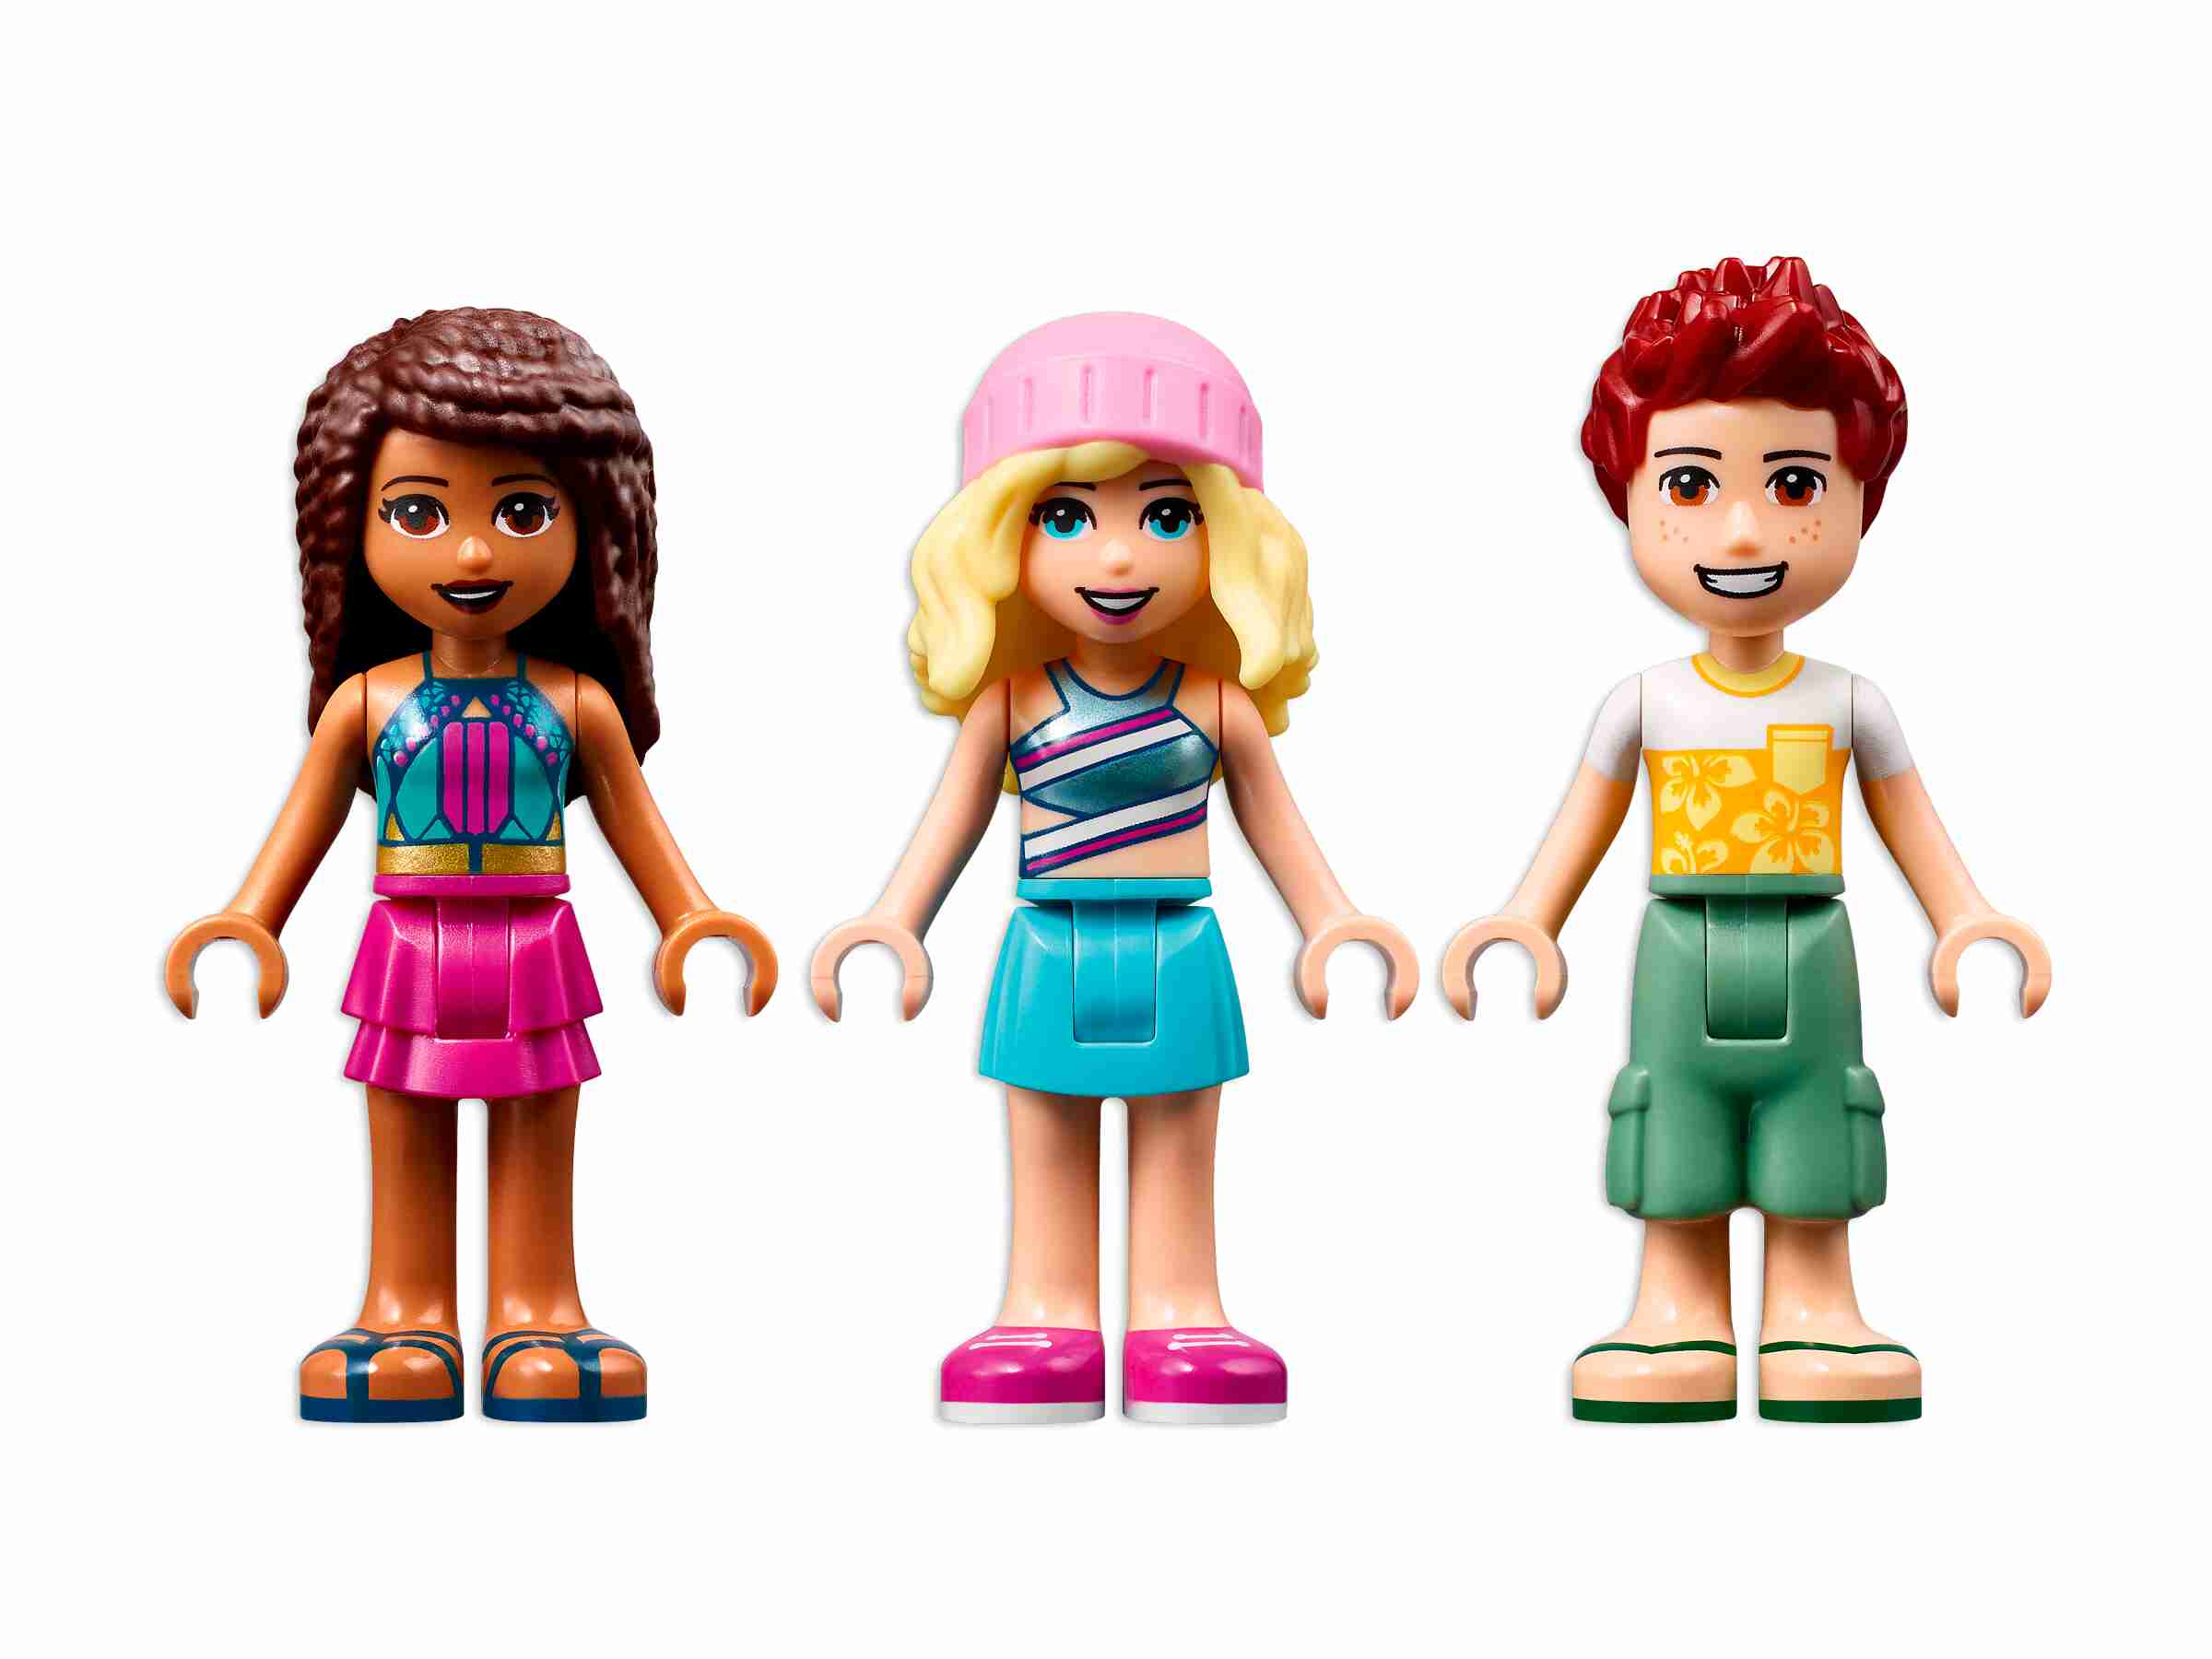 LEGO 41700 Friends Glamping am Strand, mit 3 Mini-Puppen und Zubehör